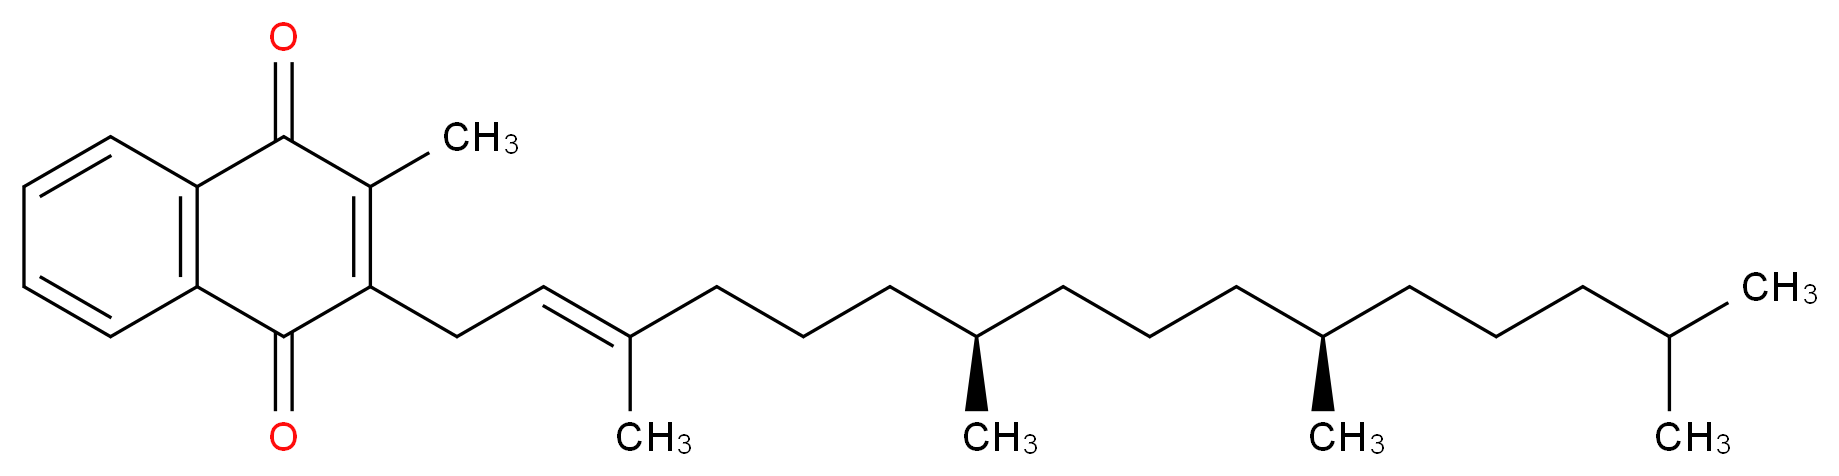 2-methyl-3-[(7R,11R)-3,7,11,15-tetramethylhexadec-2-en-1-yl]-1,4-dihydronaphthalene-1,4-dione_分子结构_CAS_84-80-0